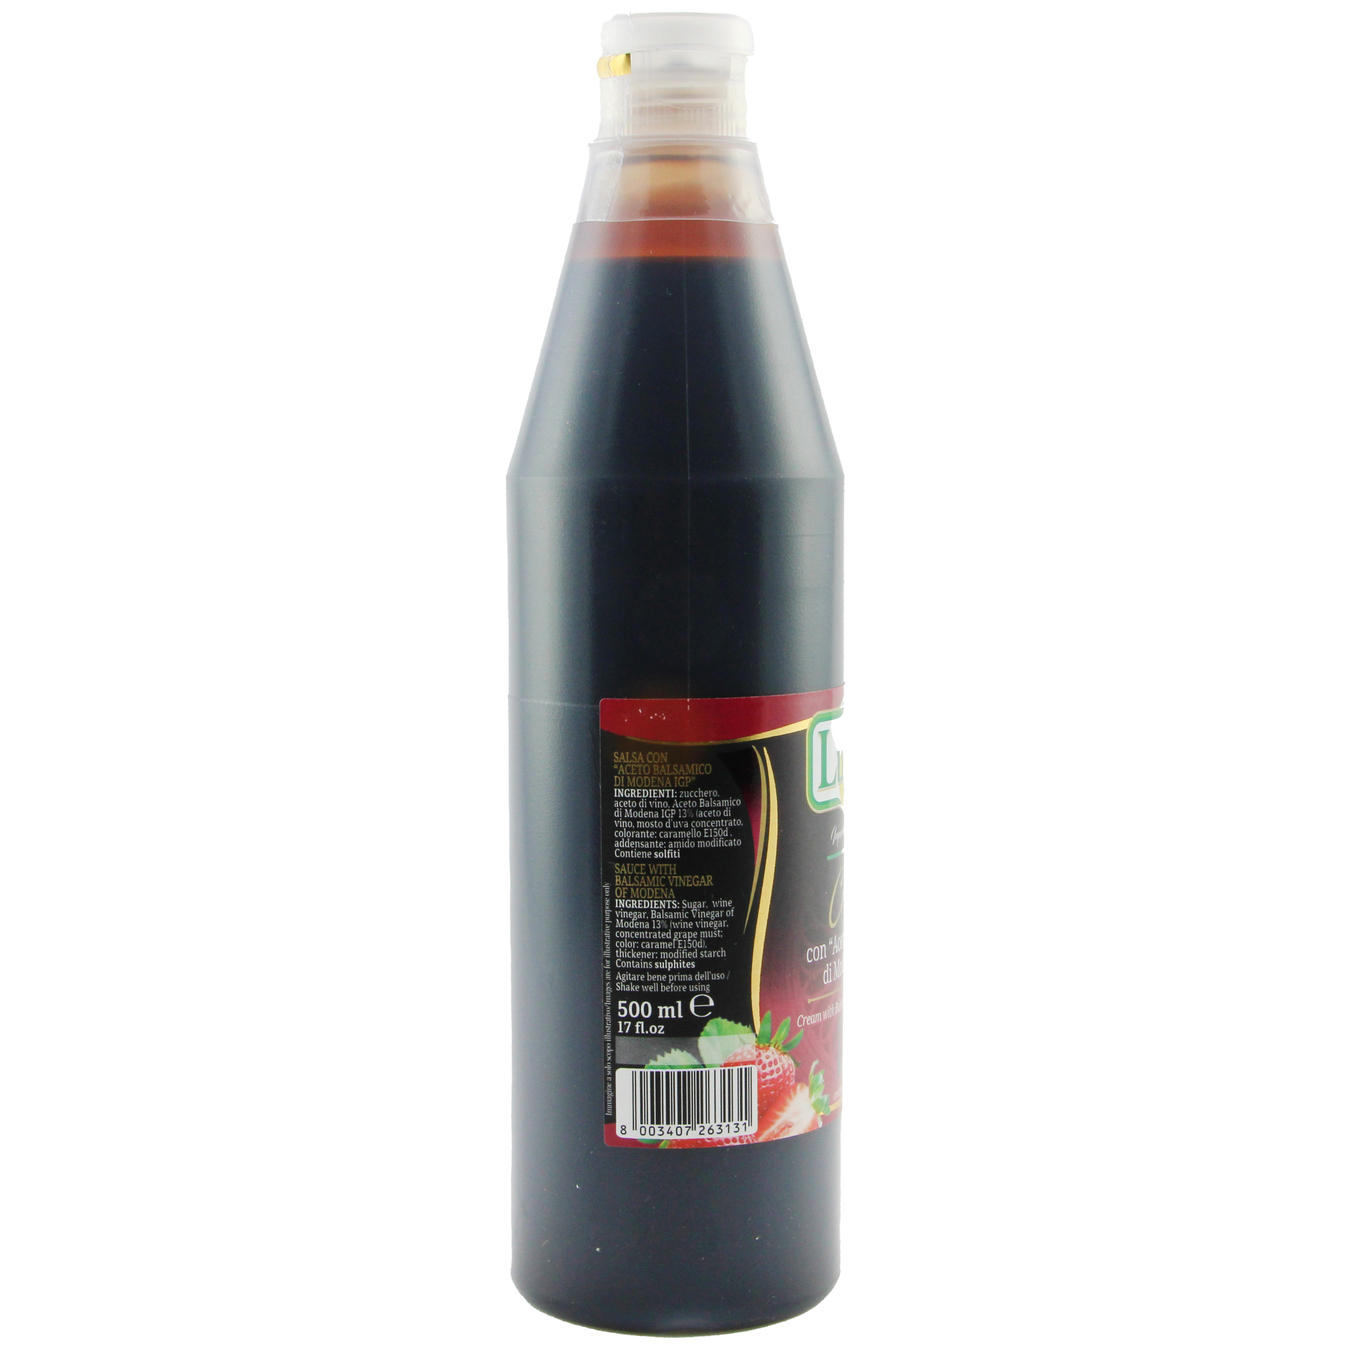 Luglio Balsamic Vinegar Di Modena Sauce 500ml 2